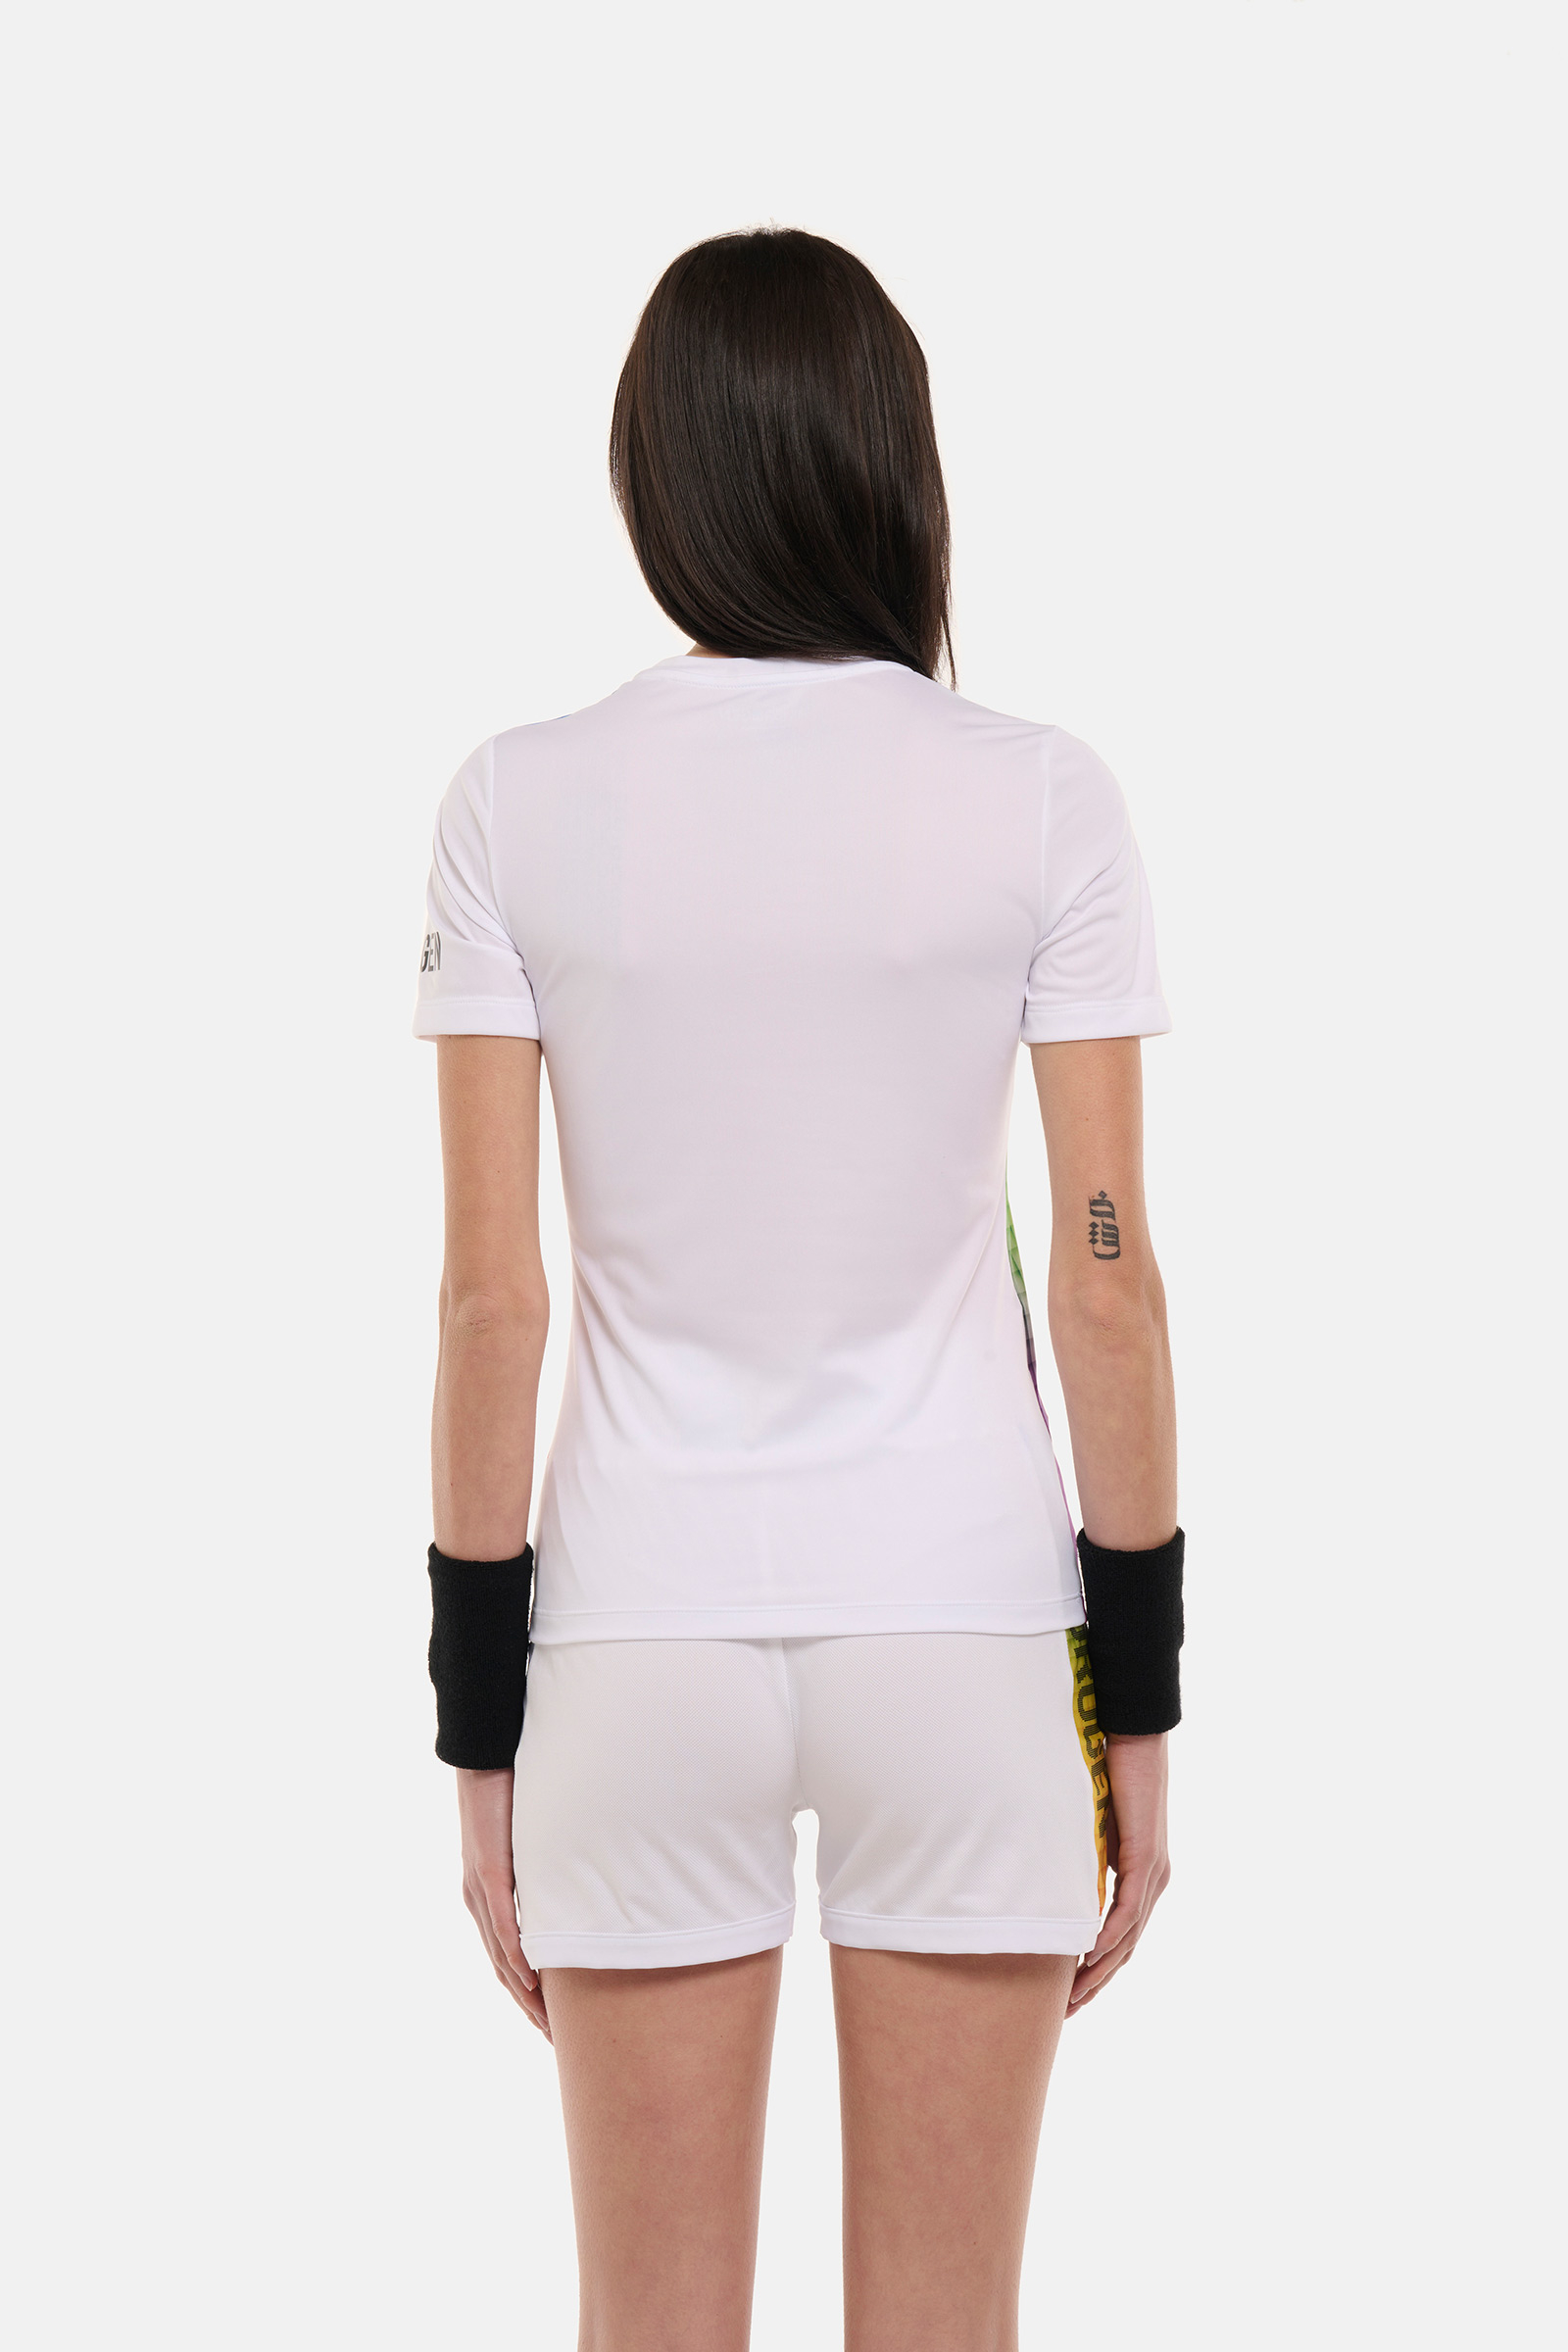 SPECTRUM TECH T-SHIRT - WHITE - Hydrogen - Luxury Sportwear